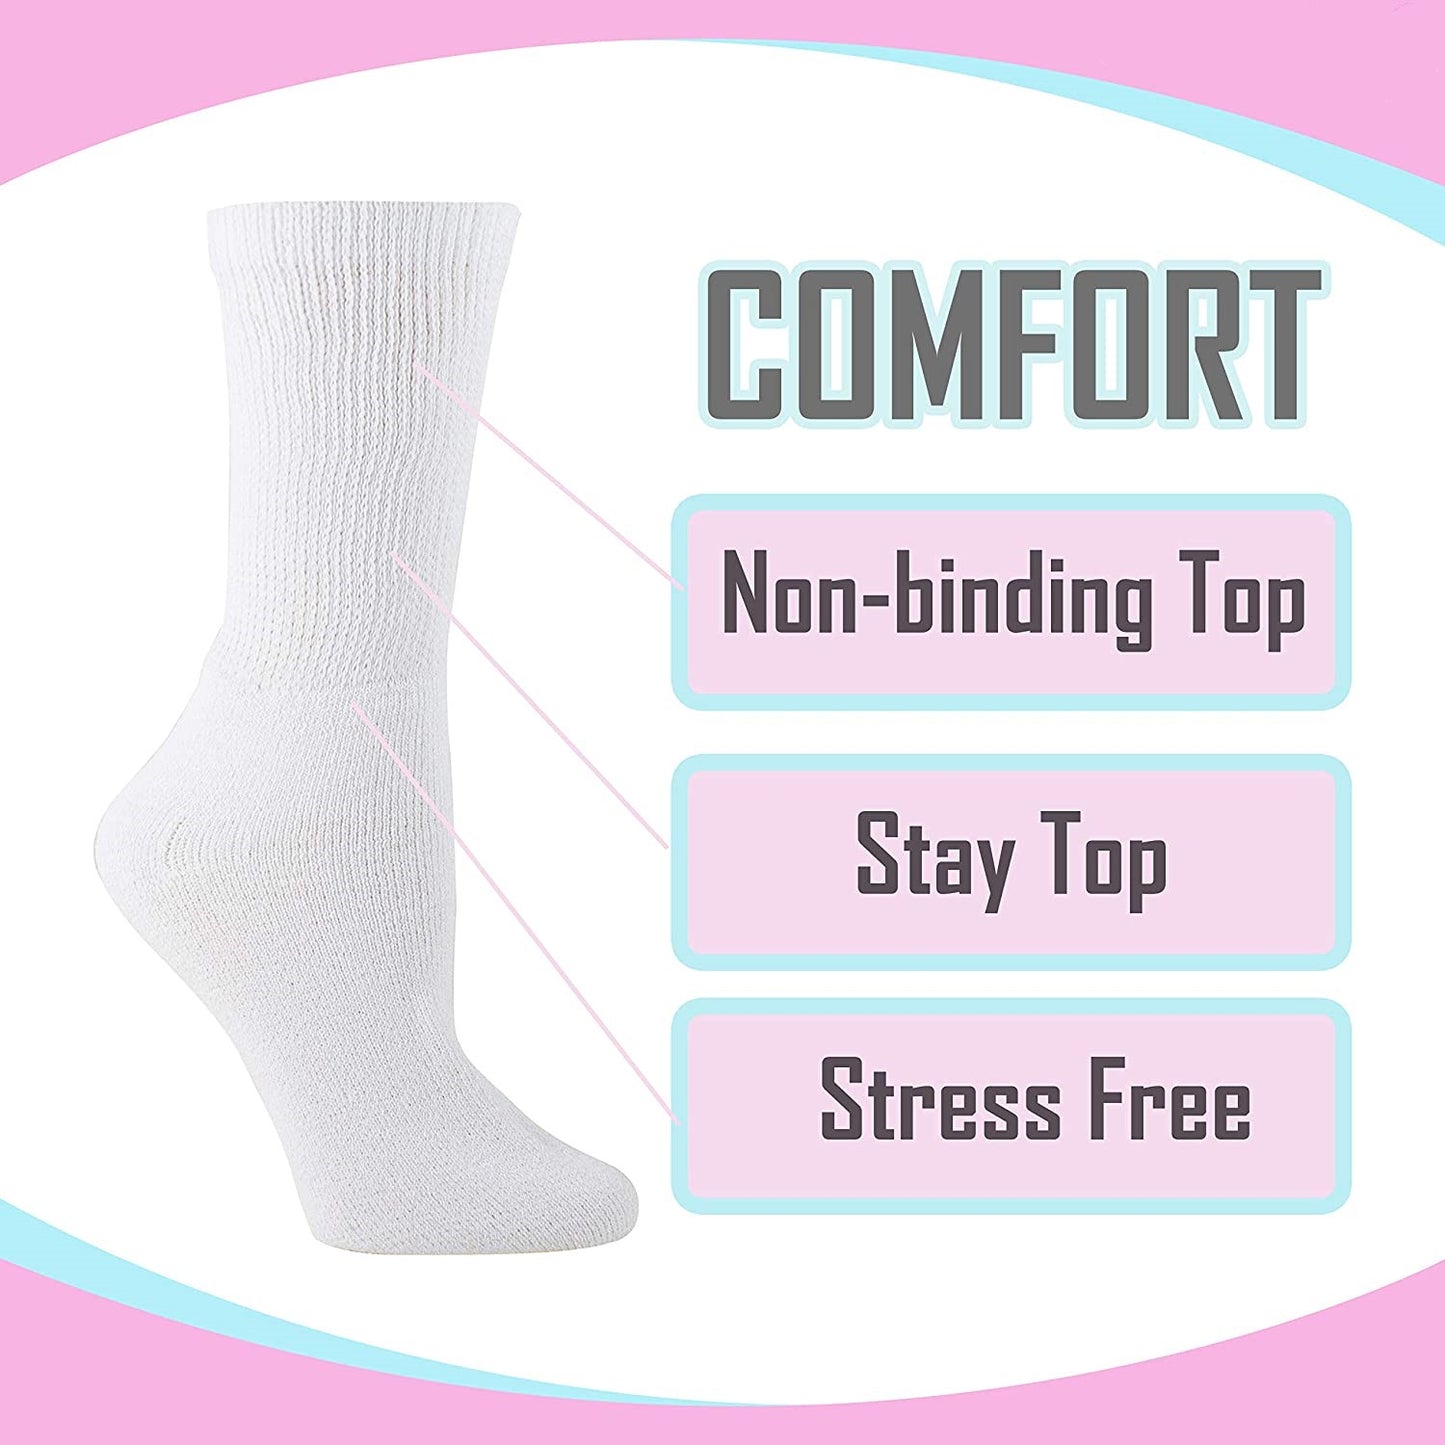  Busy Socks Soft Non-binding Top Diabetic Socks for